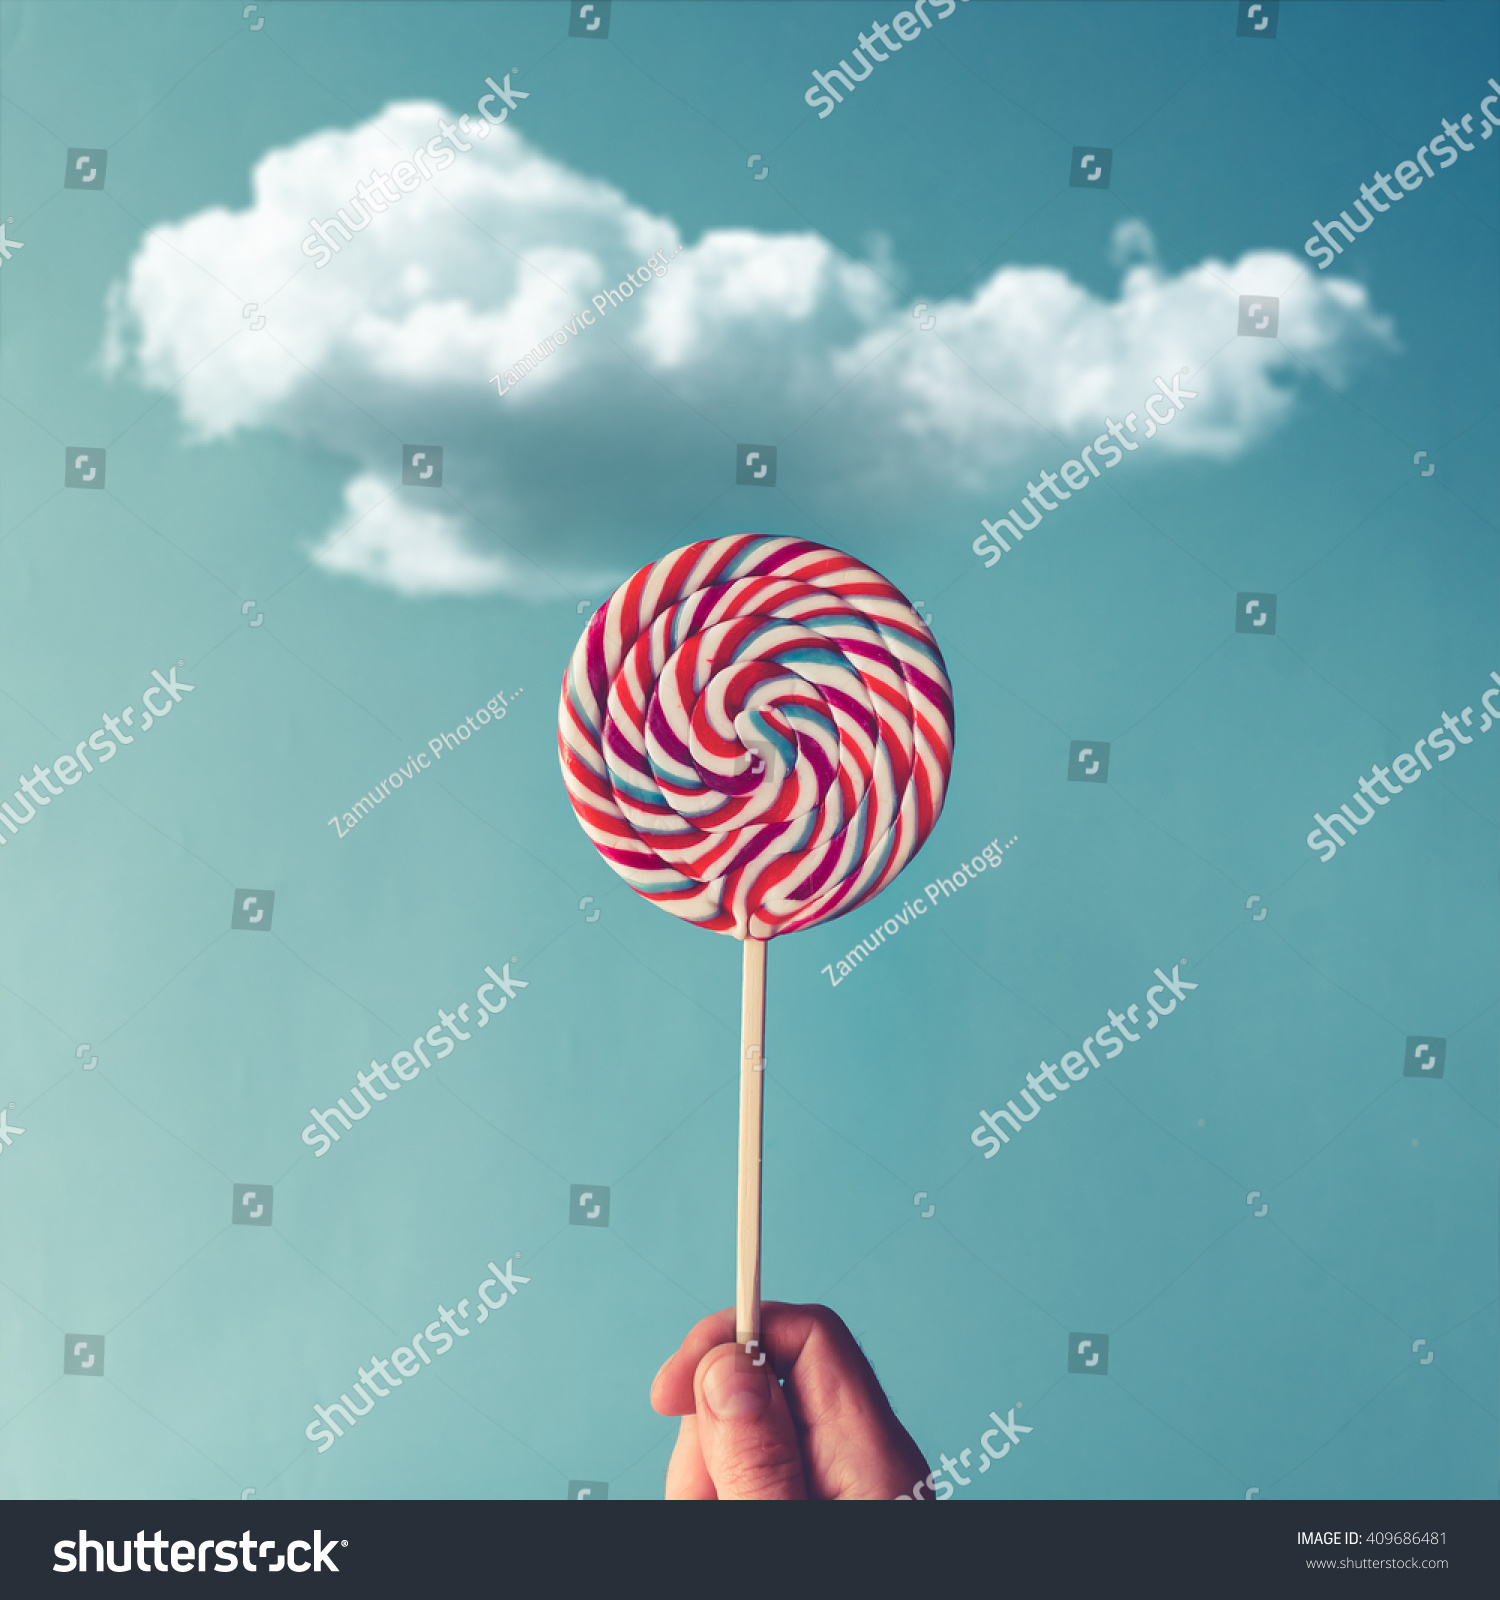 3,484 Lollipop sky Images, Stock Photos & Vectors | Shutterstock